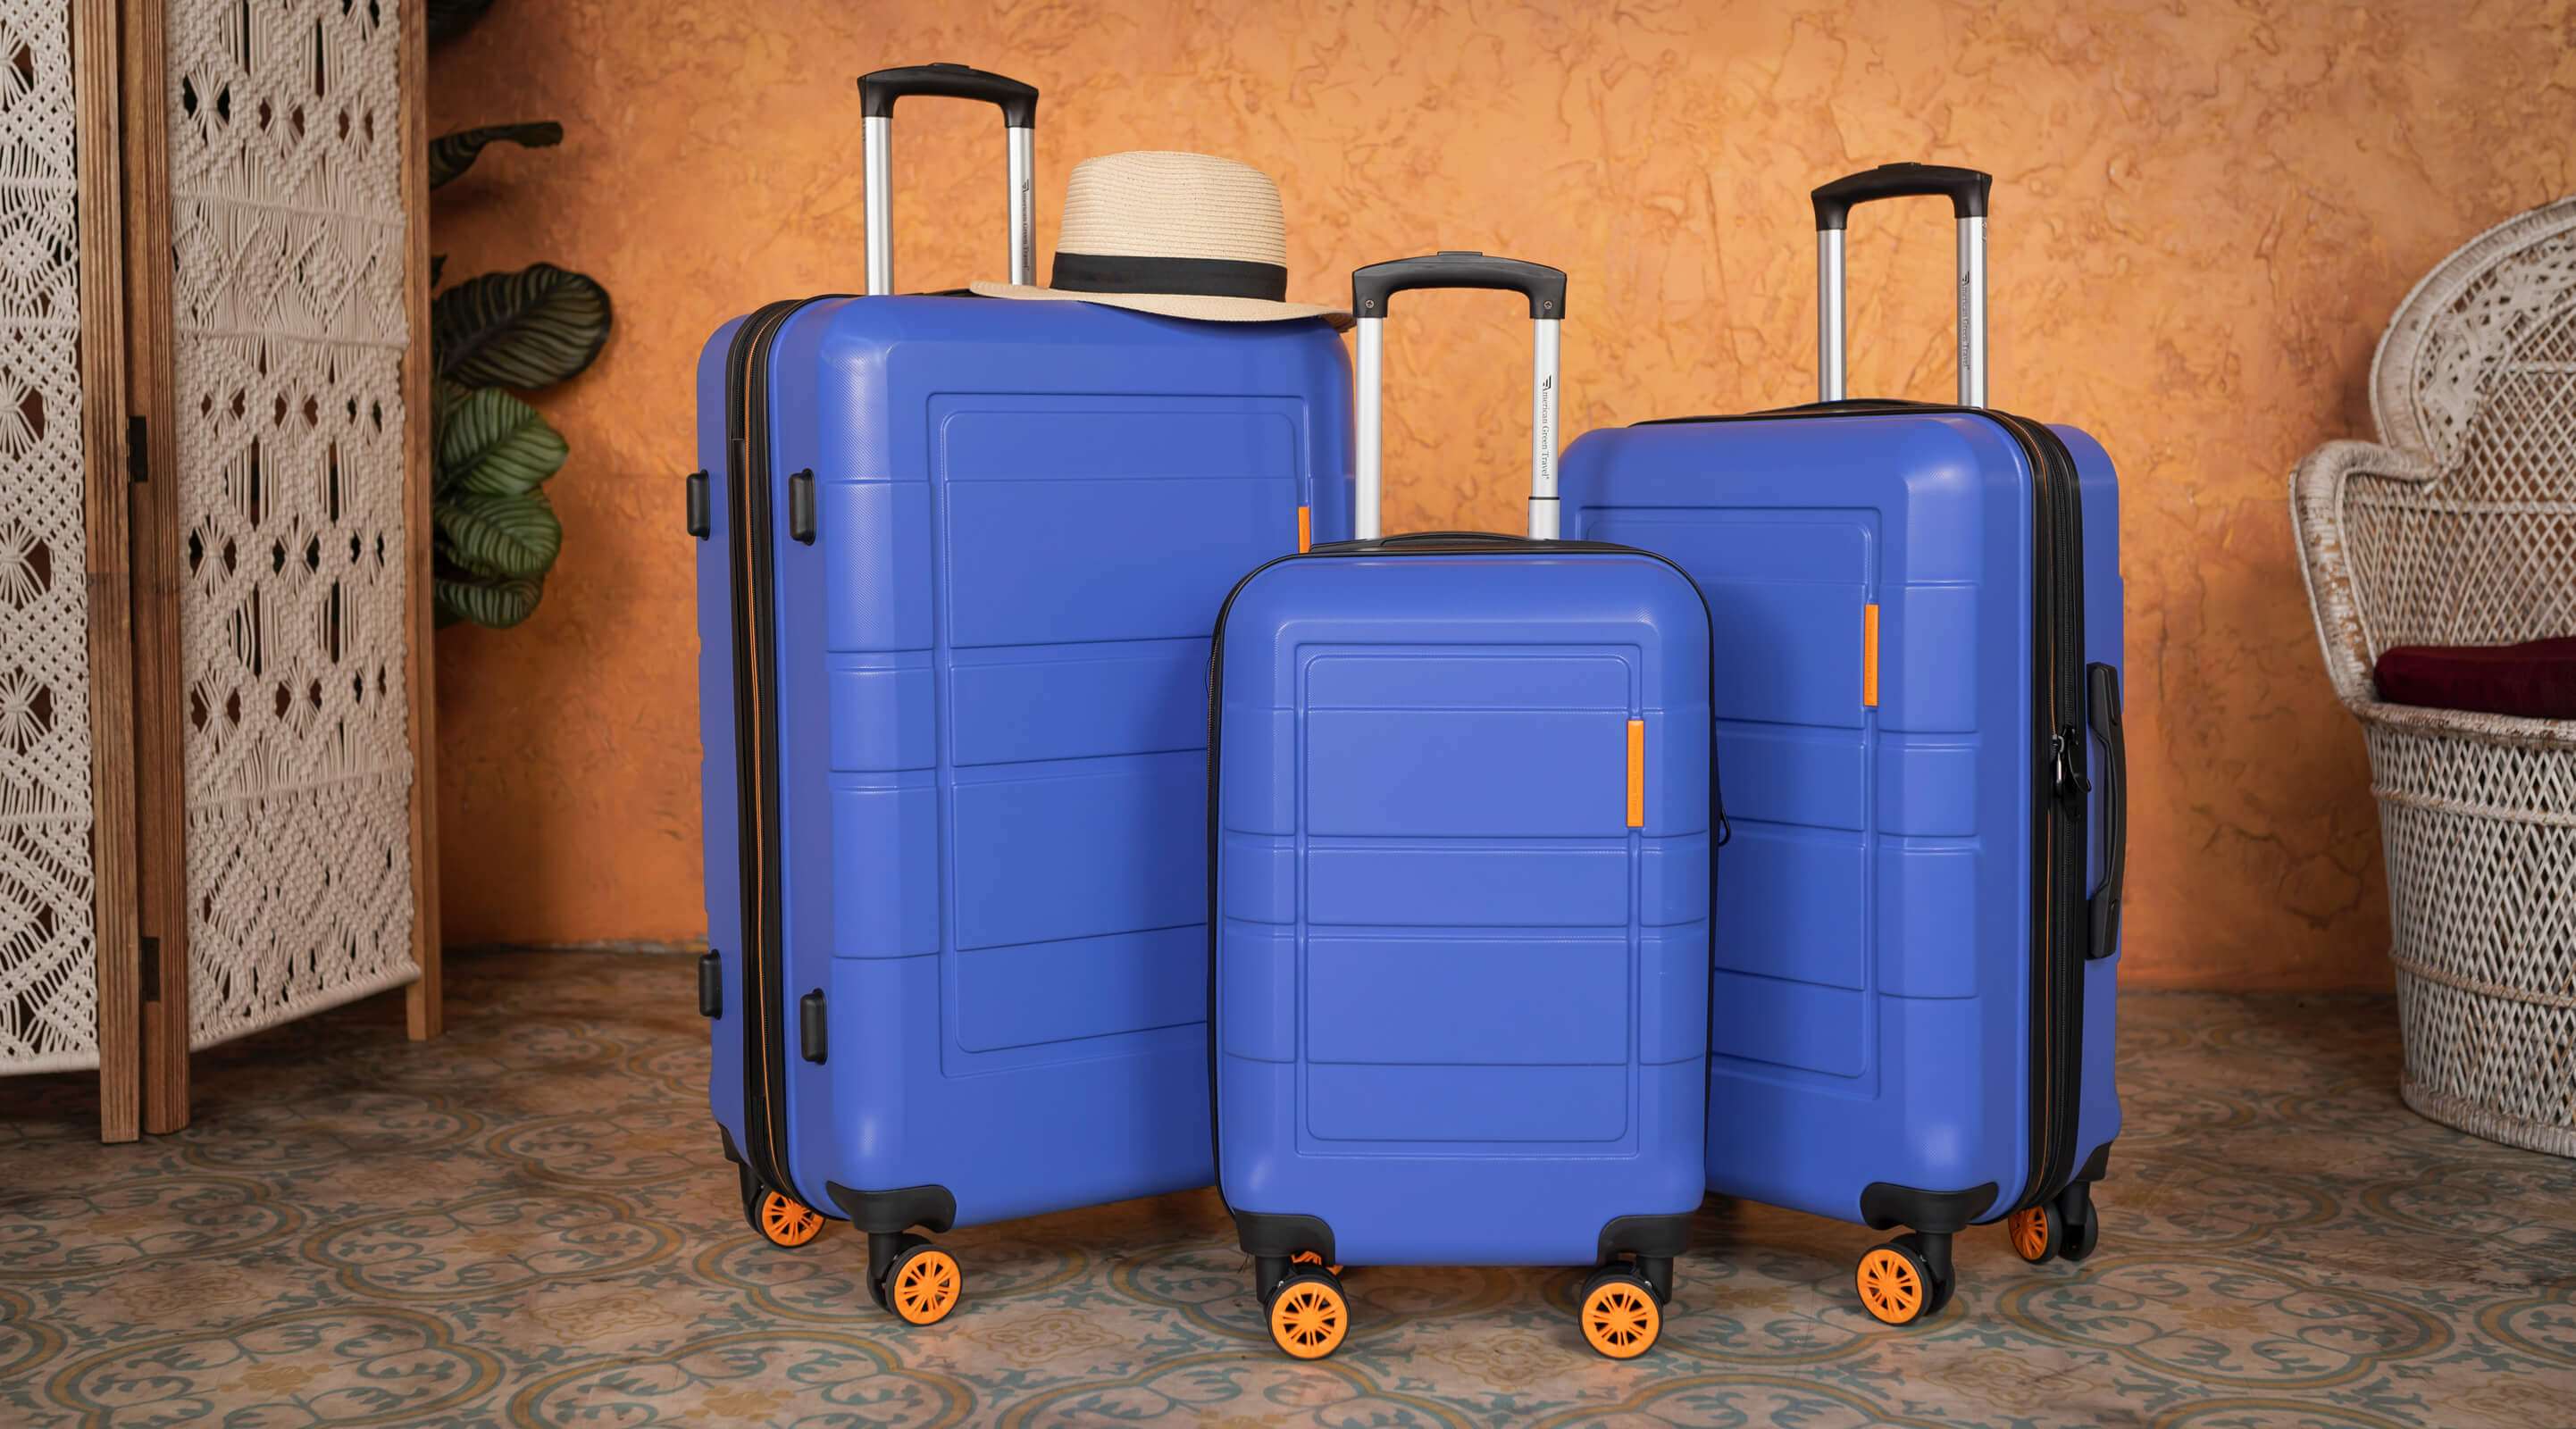  выбрать чемодан для путешествий: на что обратить внимание